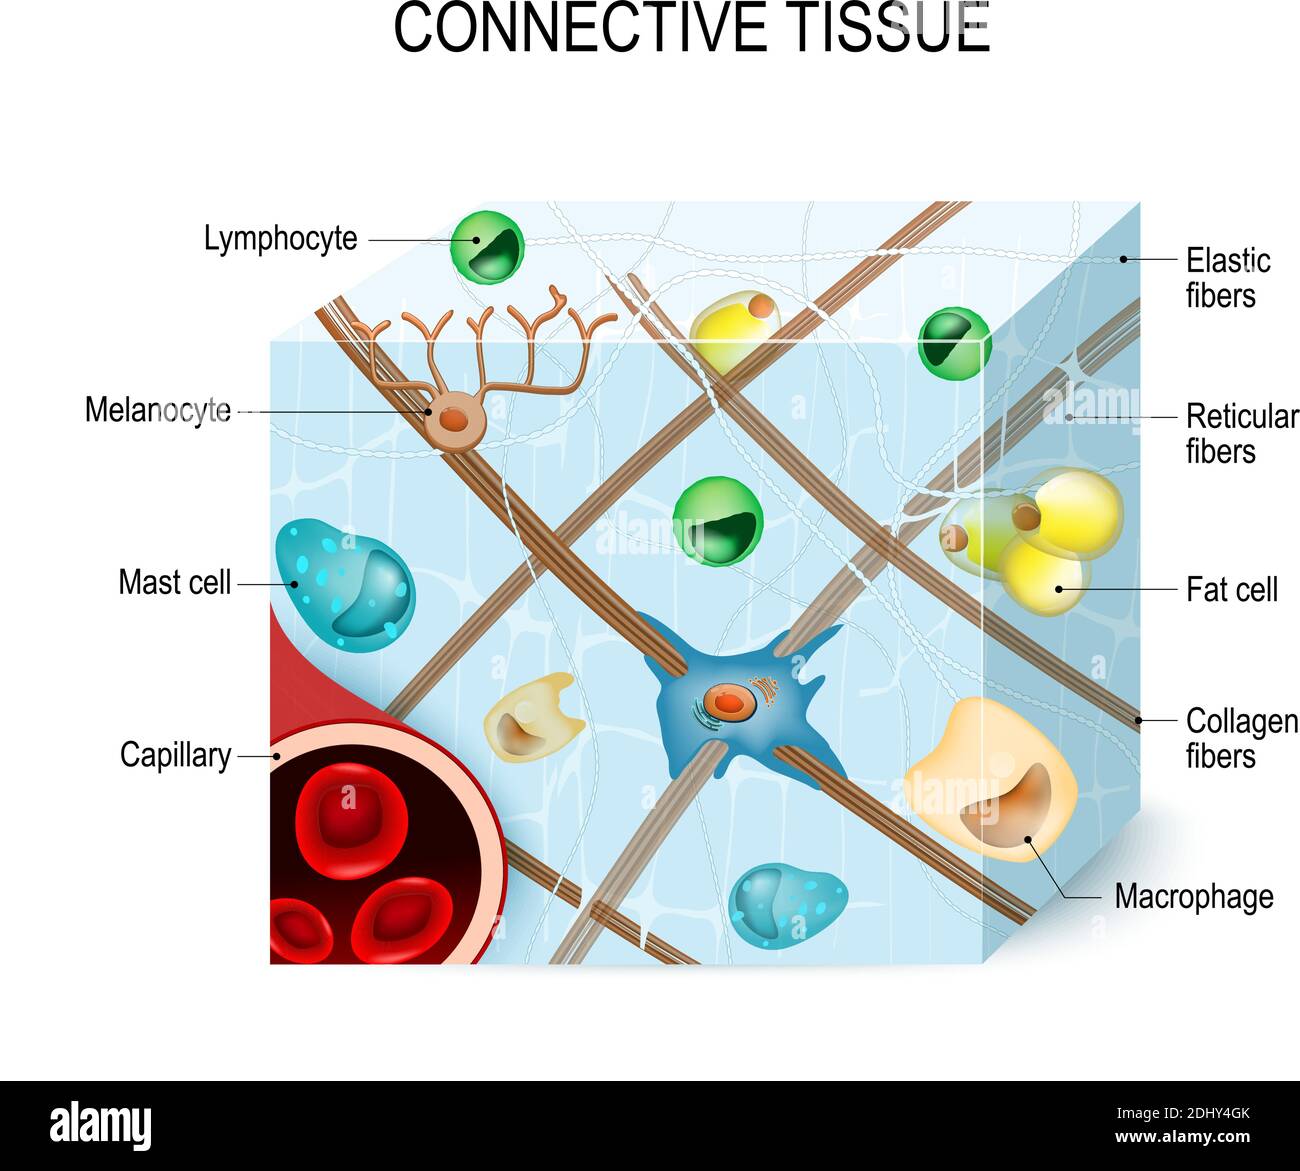 tessuto connettivo che supporta, lega o separa tessuti e organi più specializzati del corpo. Illustrazione Illustrazione Vettoriale